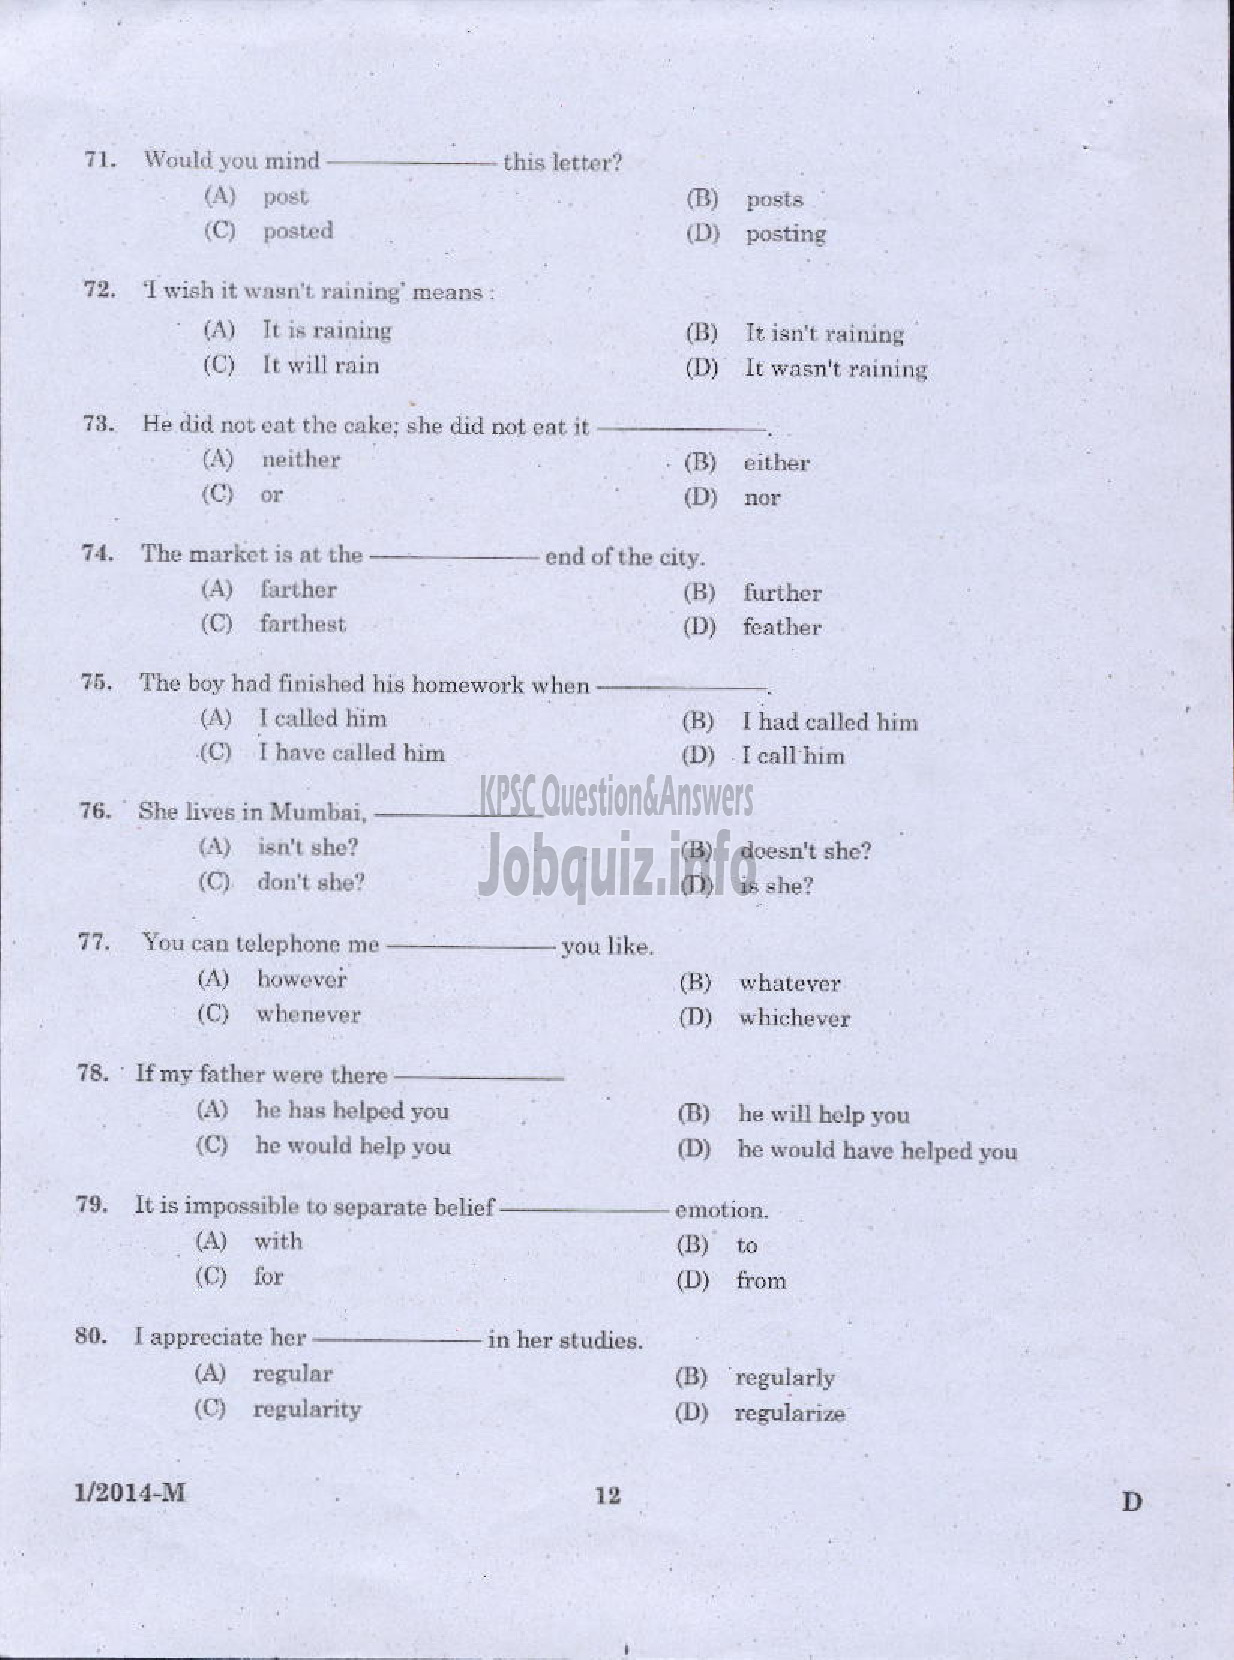 Kerala PSC Question Paper - LDC VARIOUS 2014 ERNAKUKAM ( Malayalam ) -10